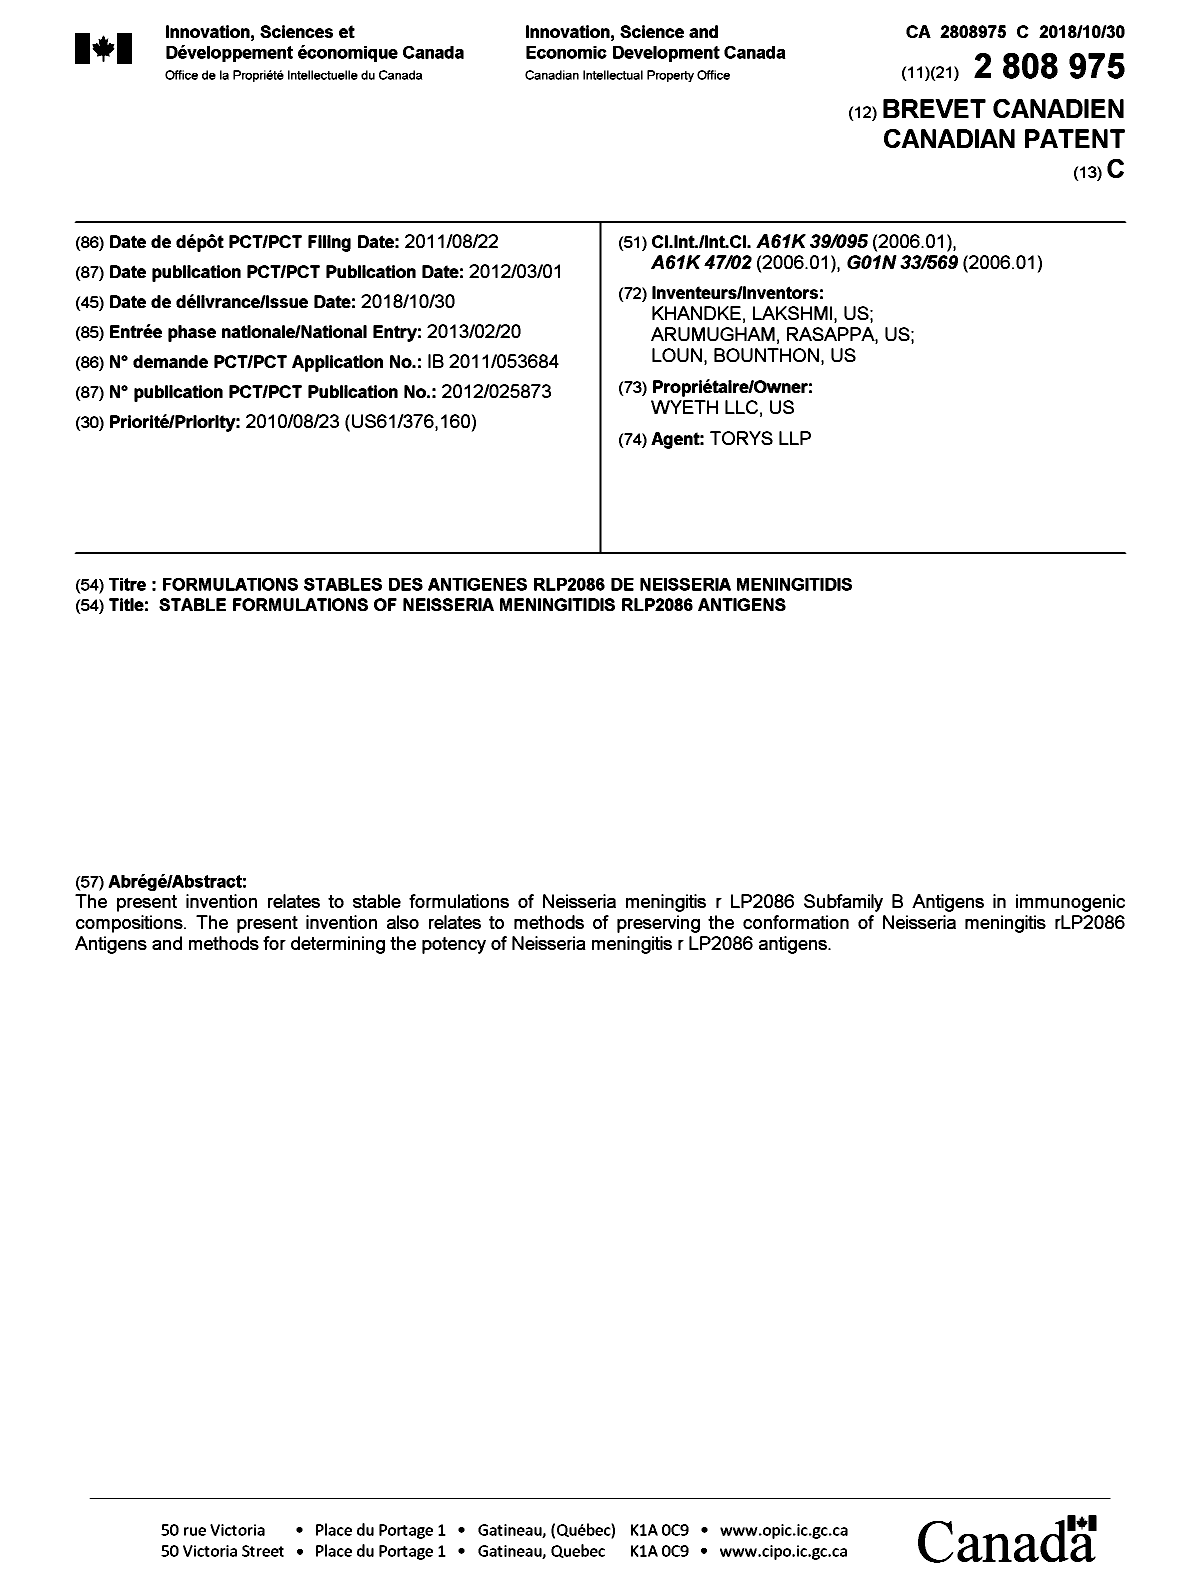 Document de brevet canadien 2808975. Page couverture 20181001. Image 1 de 1